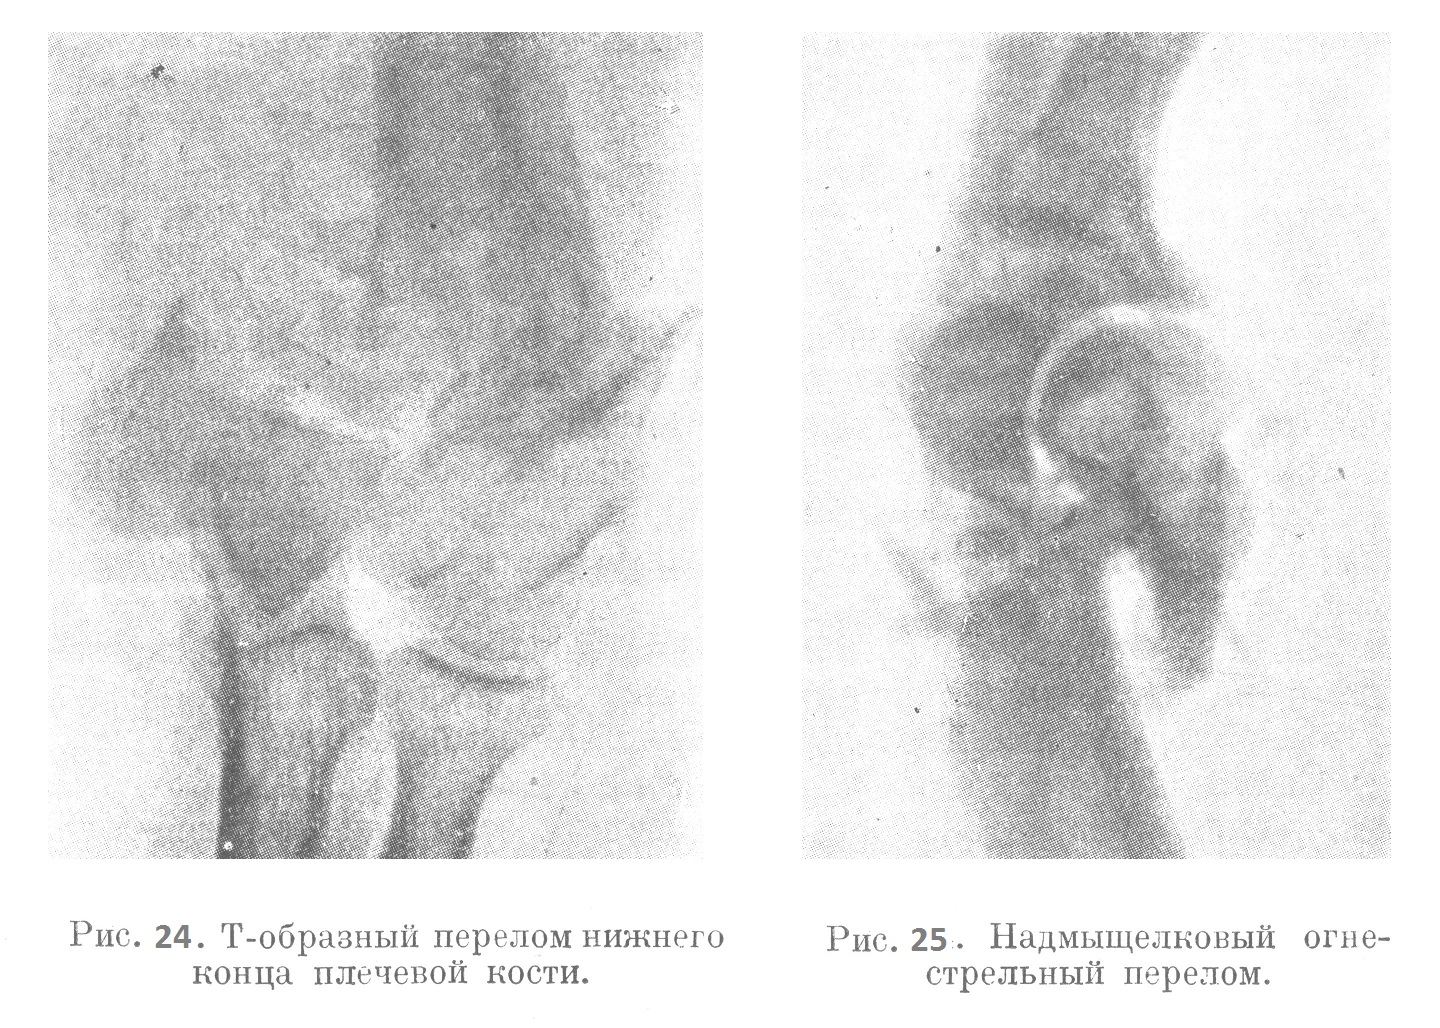 Т-образный перелом нижнего конца плечевой кости. Надмыщелковый огнестрельный перелом